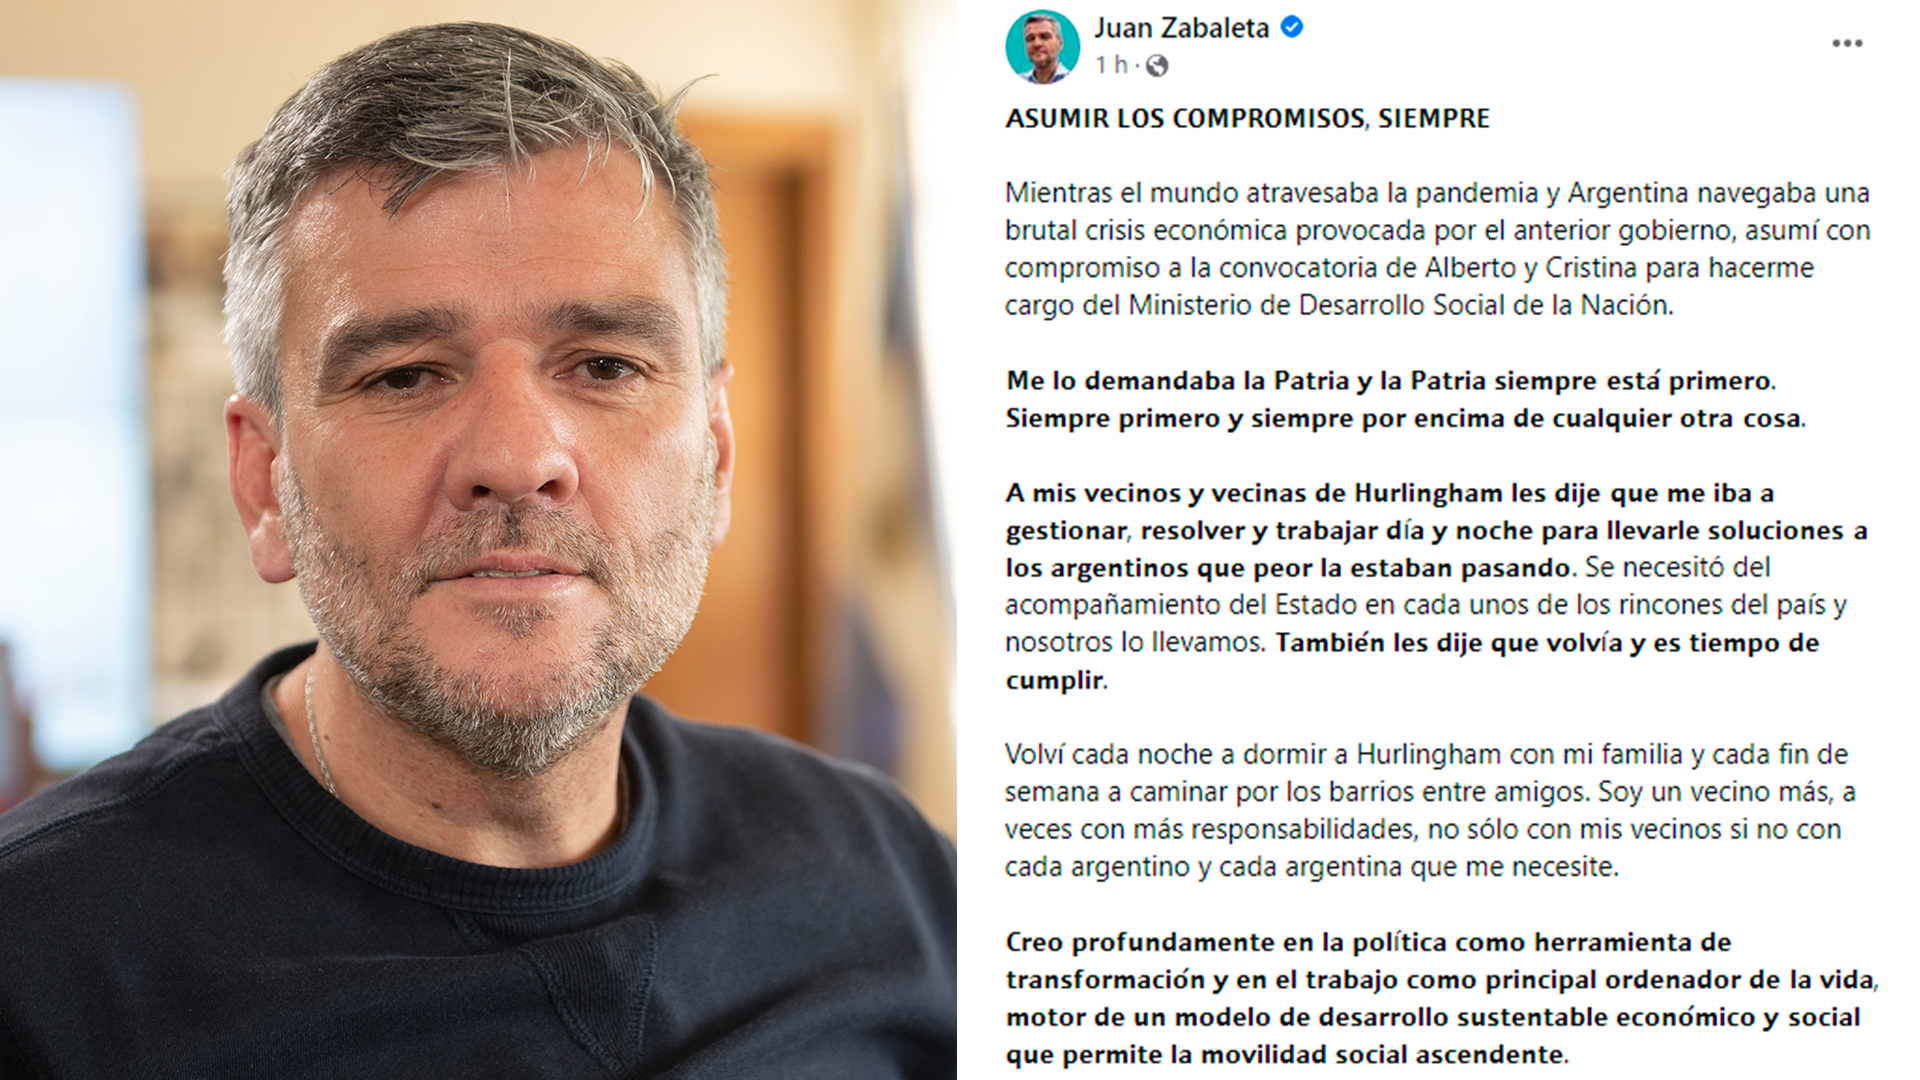 La carta de Juan Zabaleta luego de renunciar al Ministerio de Desarrollo Social: “El camino está marcado, en marcha y ordenado” 